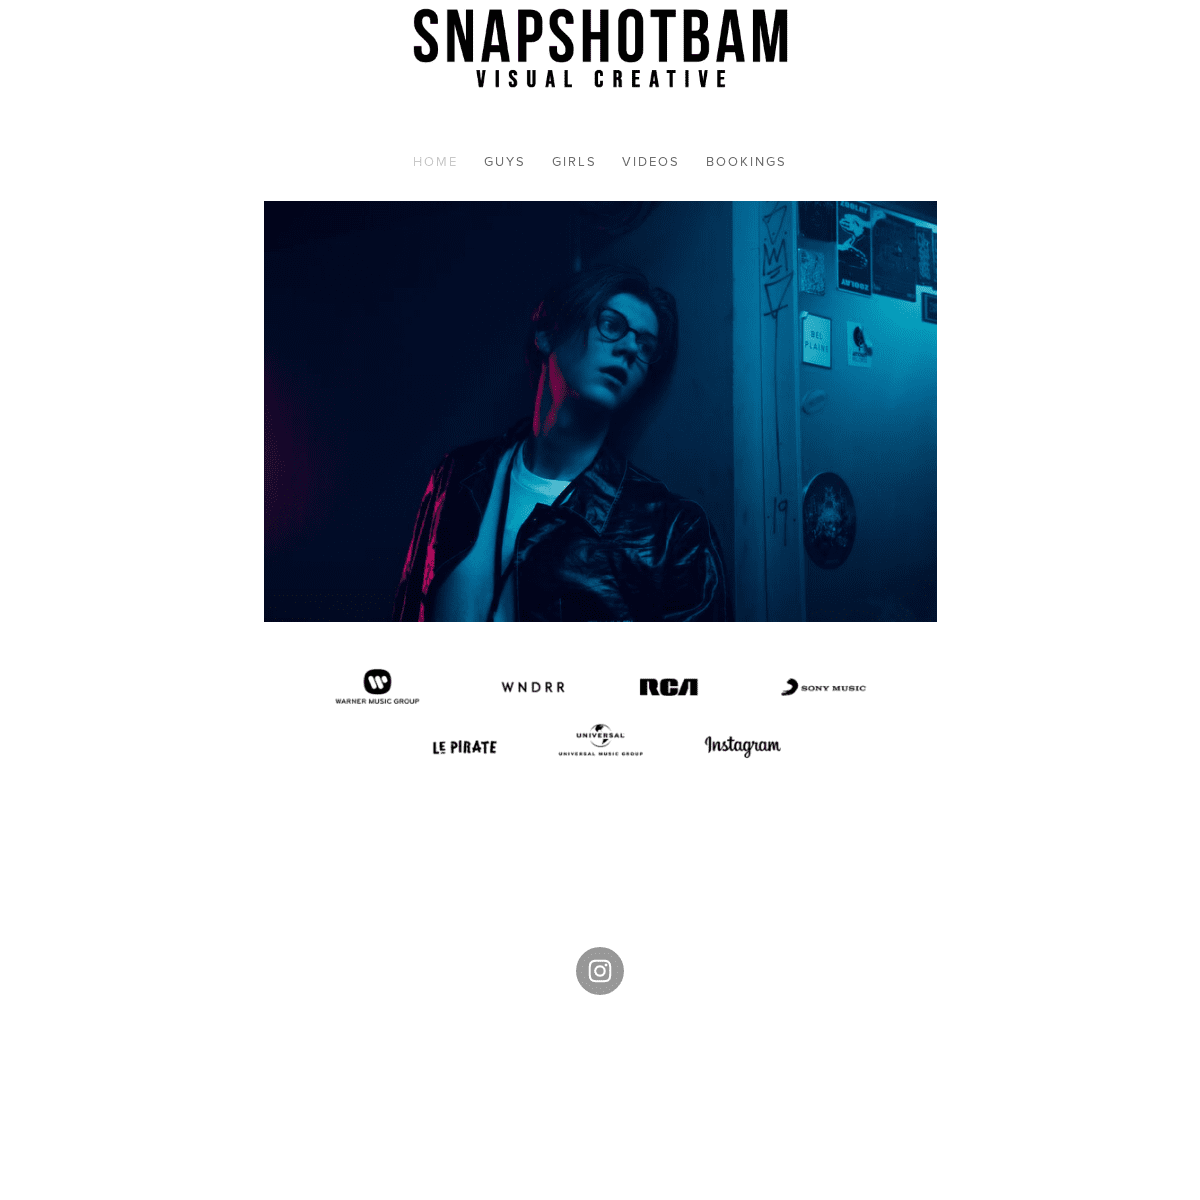 A complete backup of snapshotbam.com